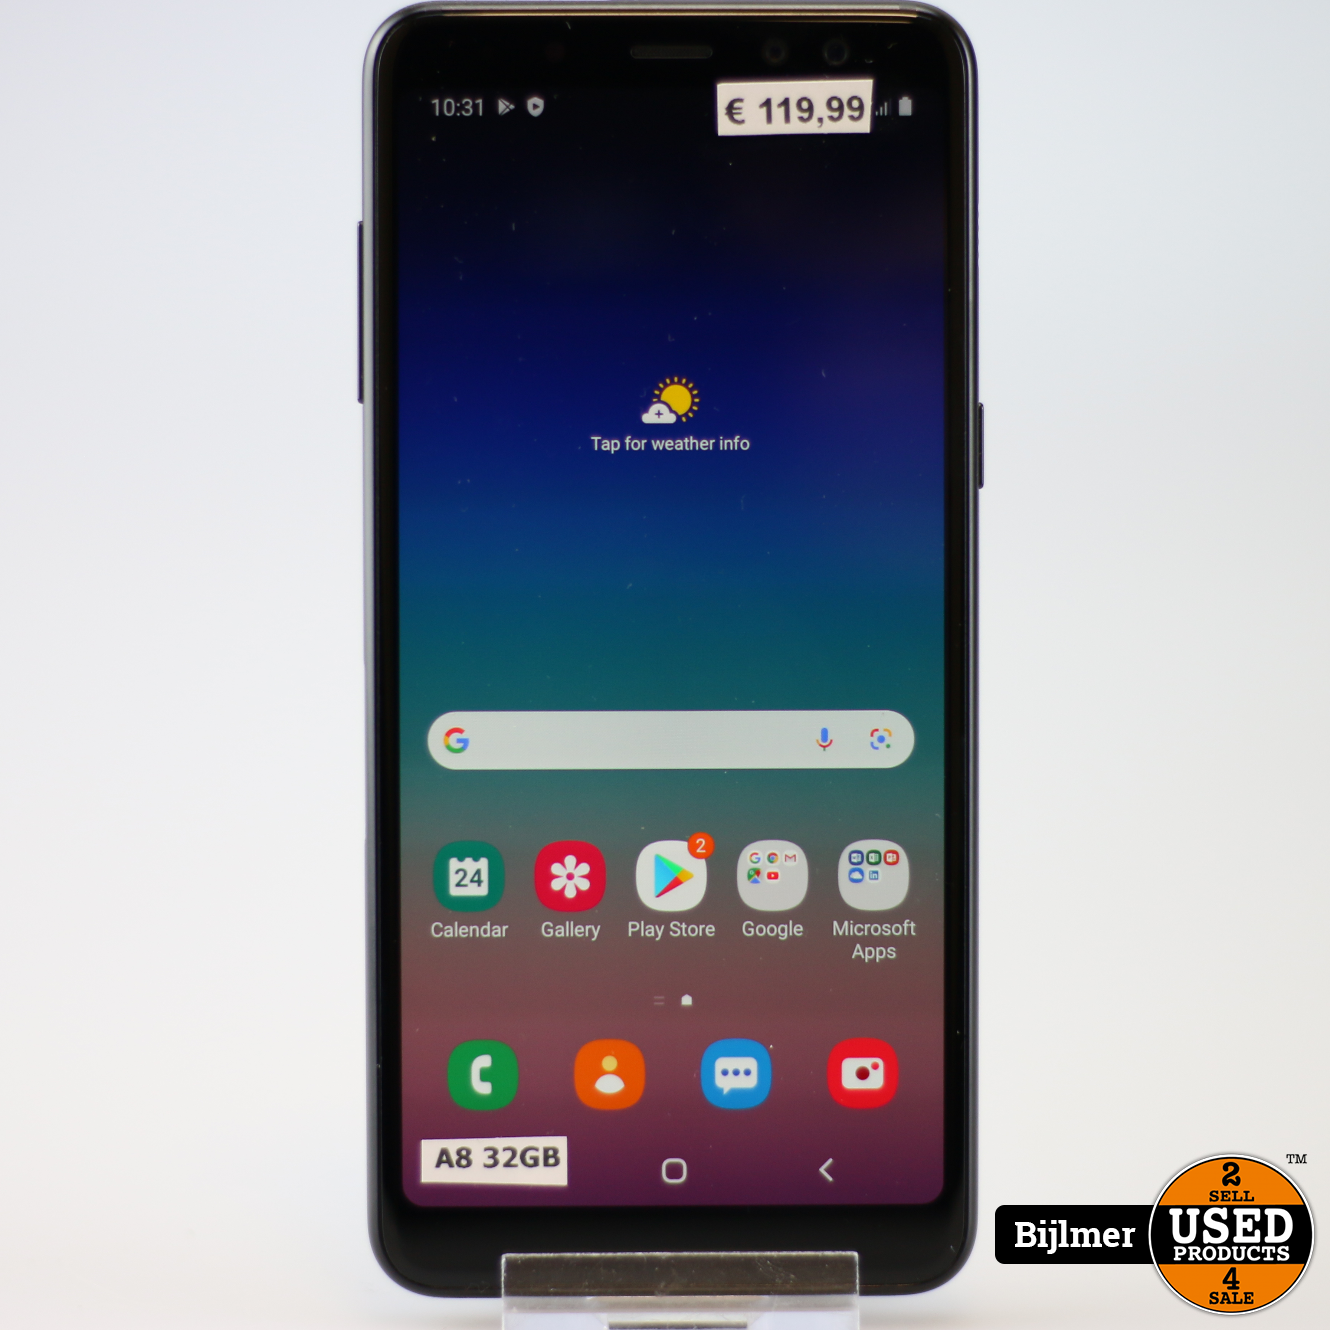 vacuüm Onderscheid cijfer Samsung Galaxy A8 2018 32GB Black - Used Products Amsterdam Bijlmer